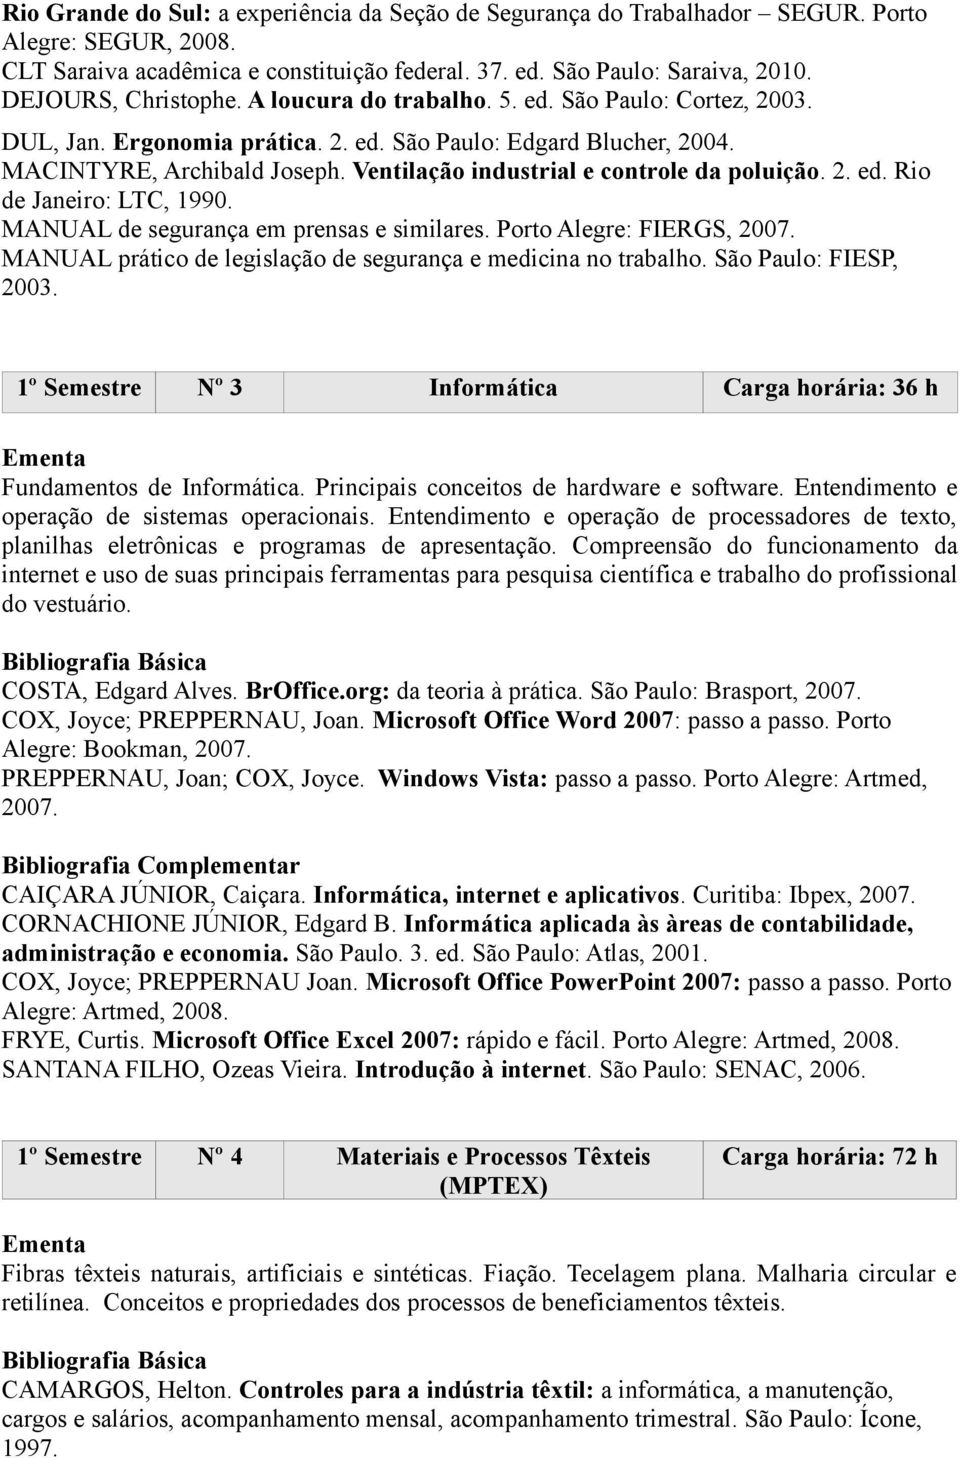 CURSO TÉCNICO EM VESTUÁRIO - PDF Download grátis